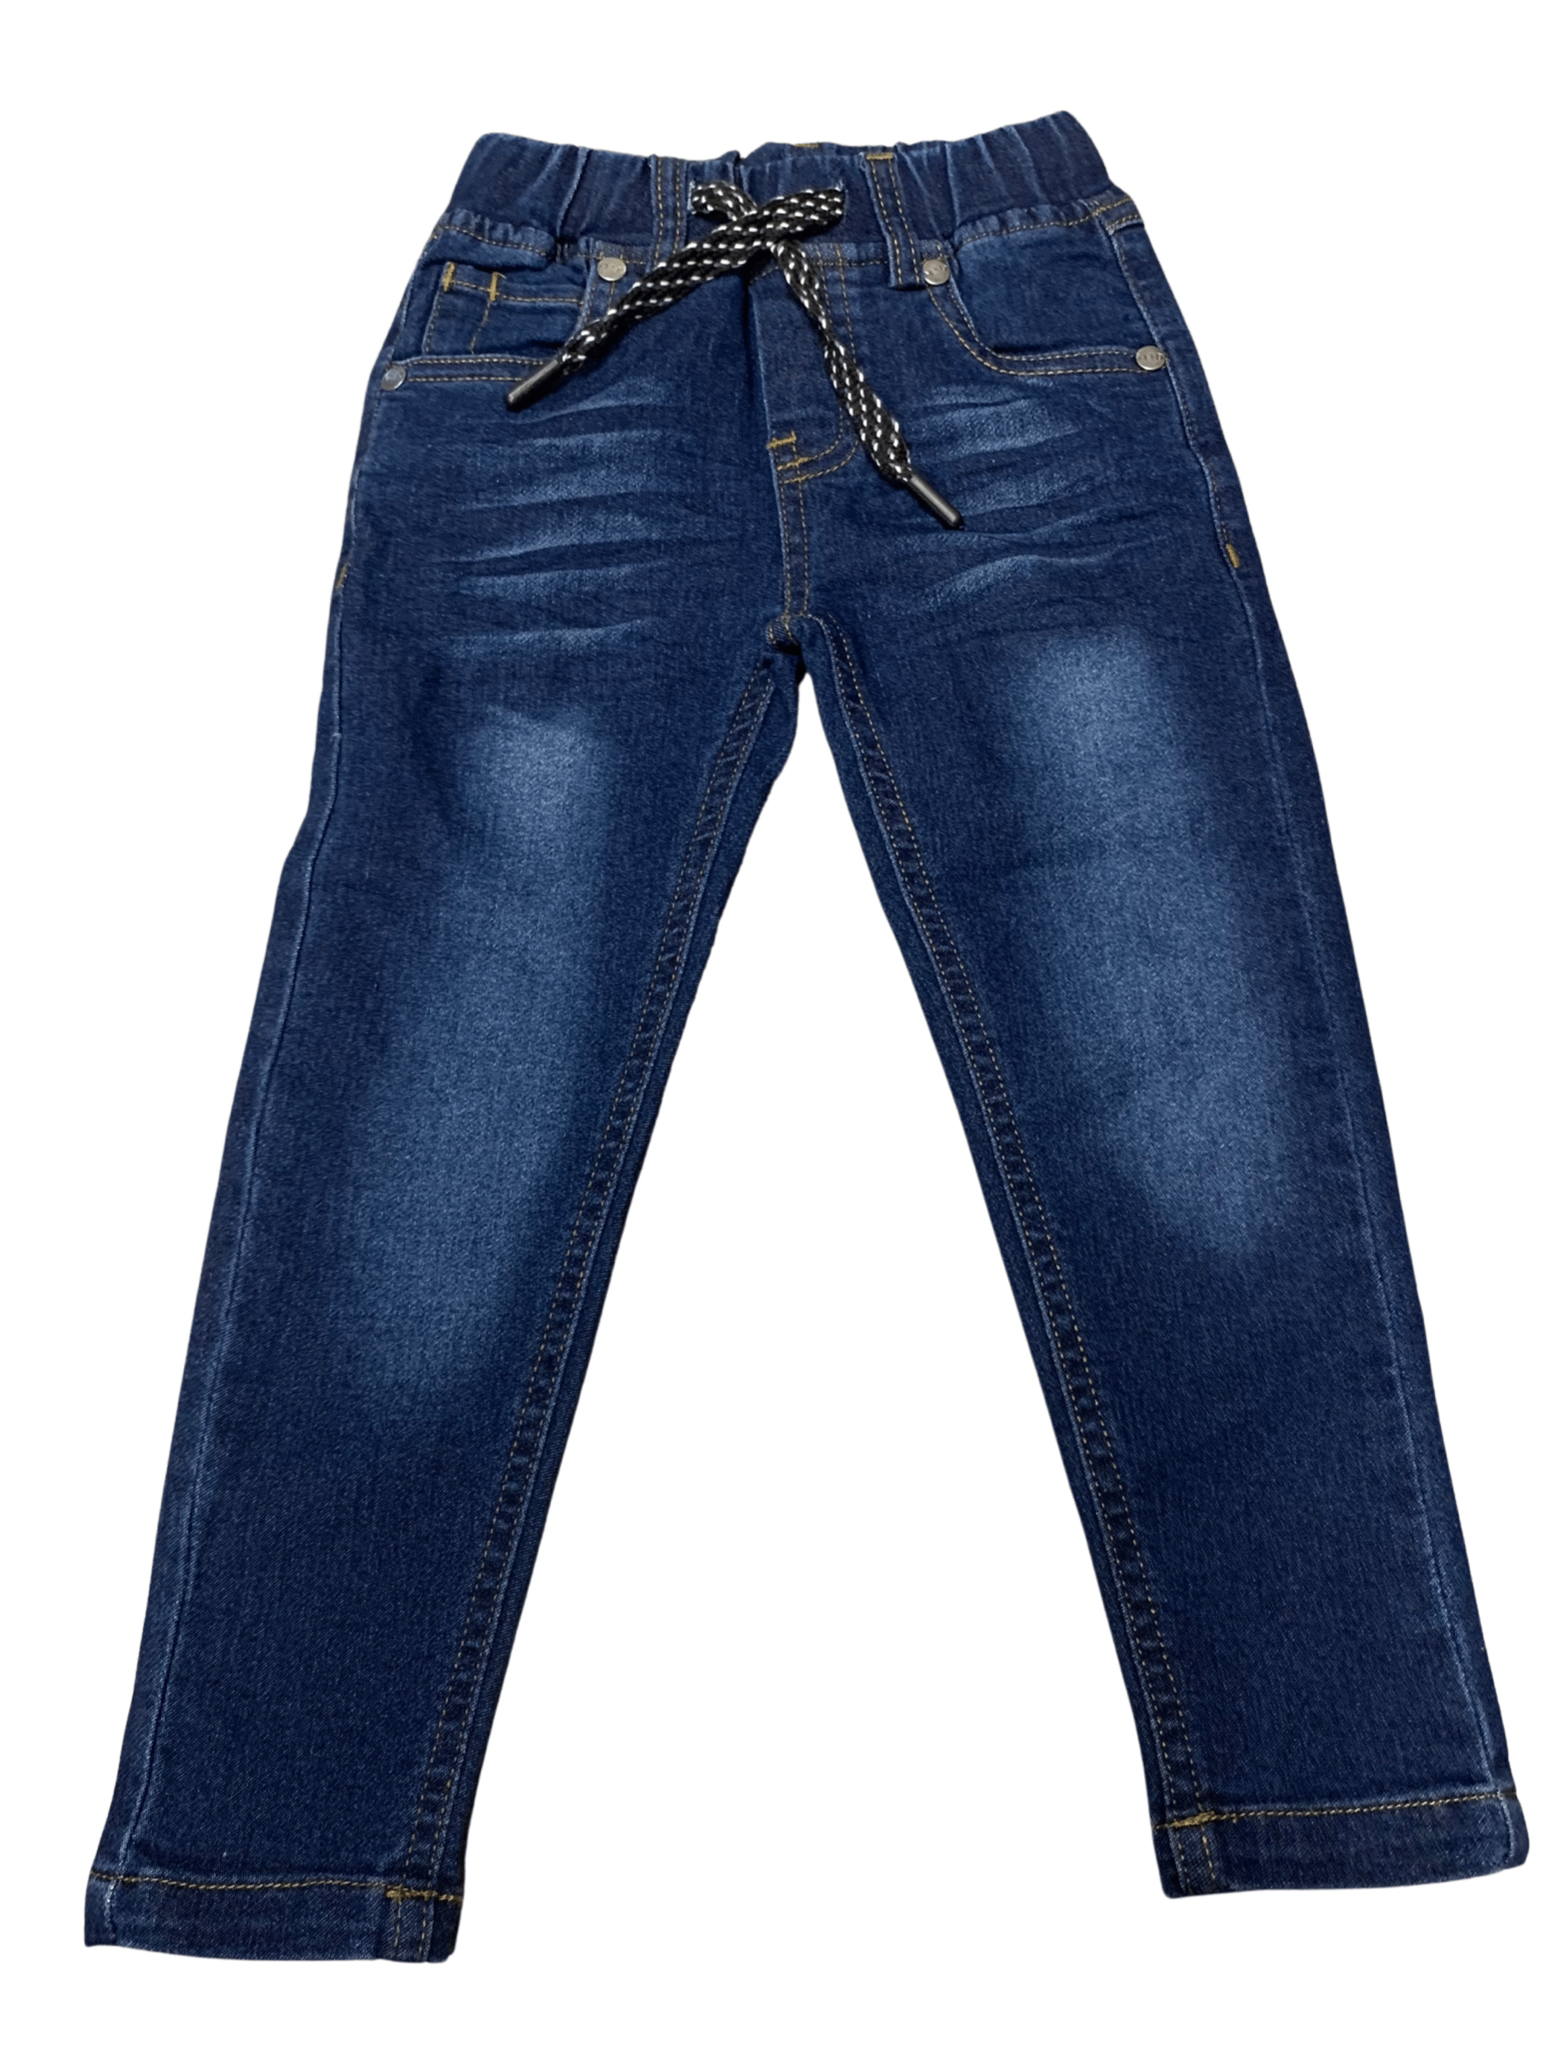 M.I.D - Pantalon en jean, bleu foncé